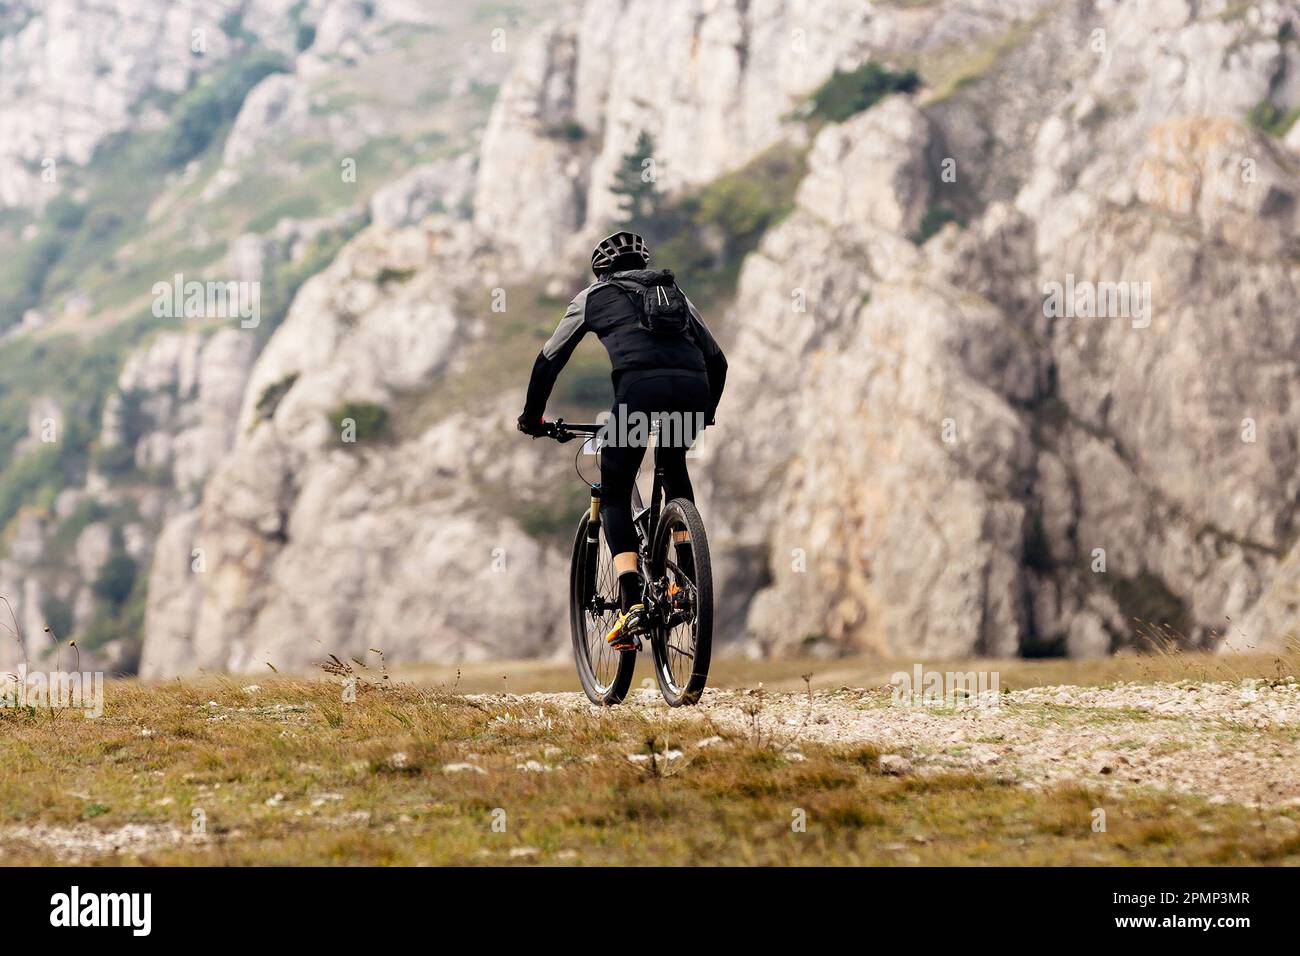 ciclista maschile in mountain bike nella regione montana in bicicletta. zaino sul retro del mountain bike Foto Stock